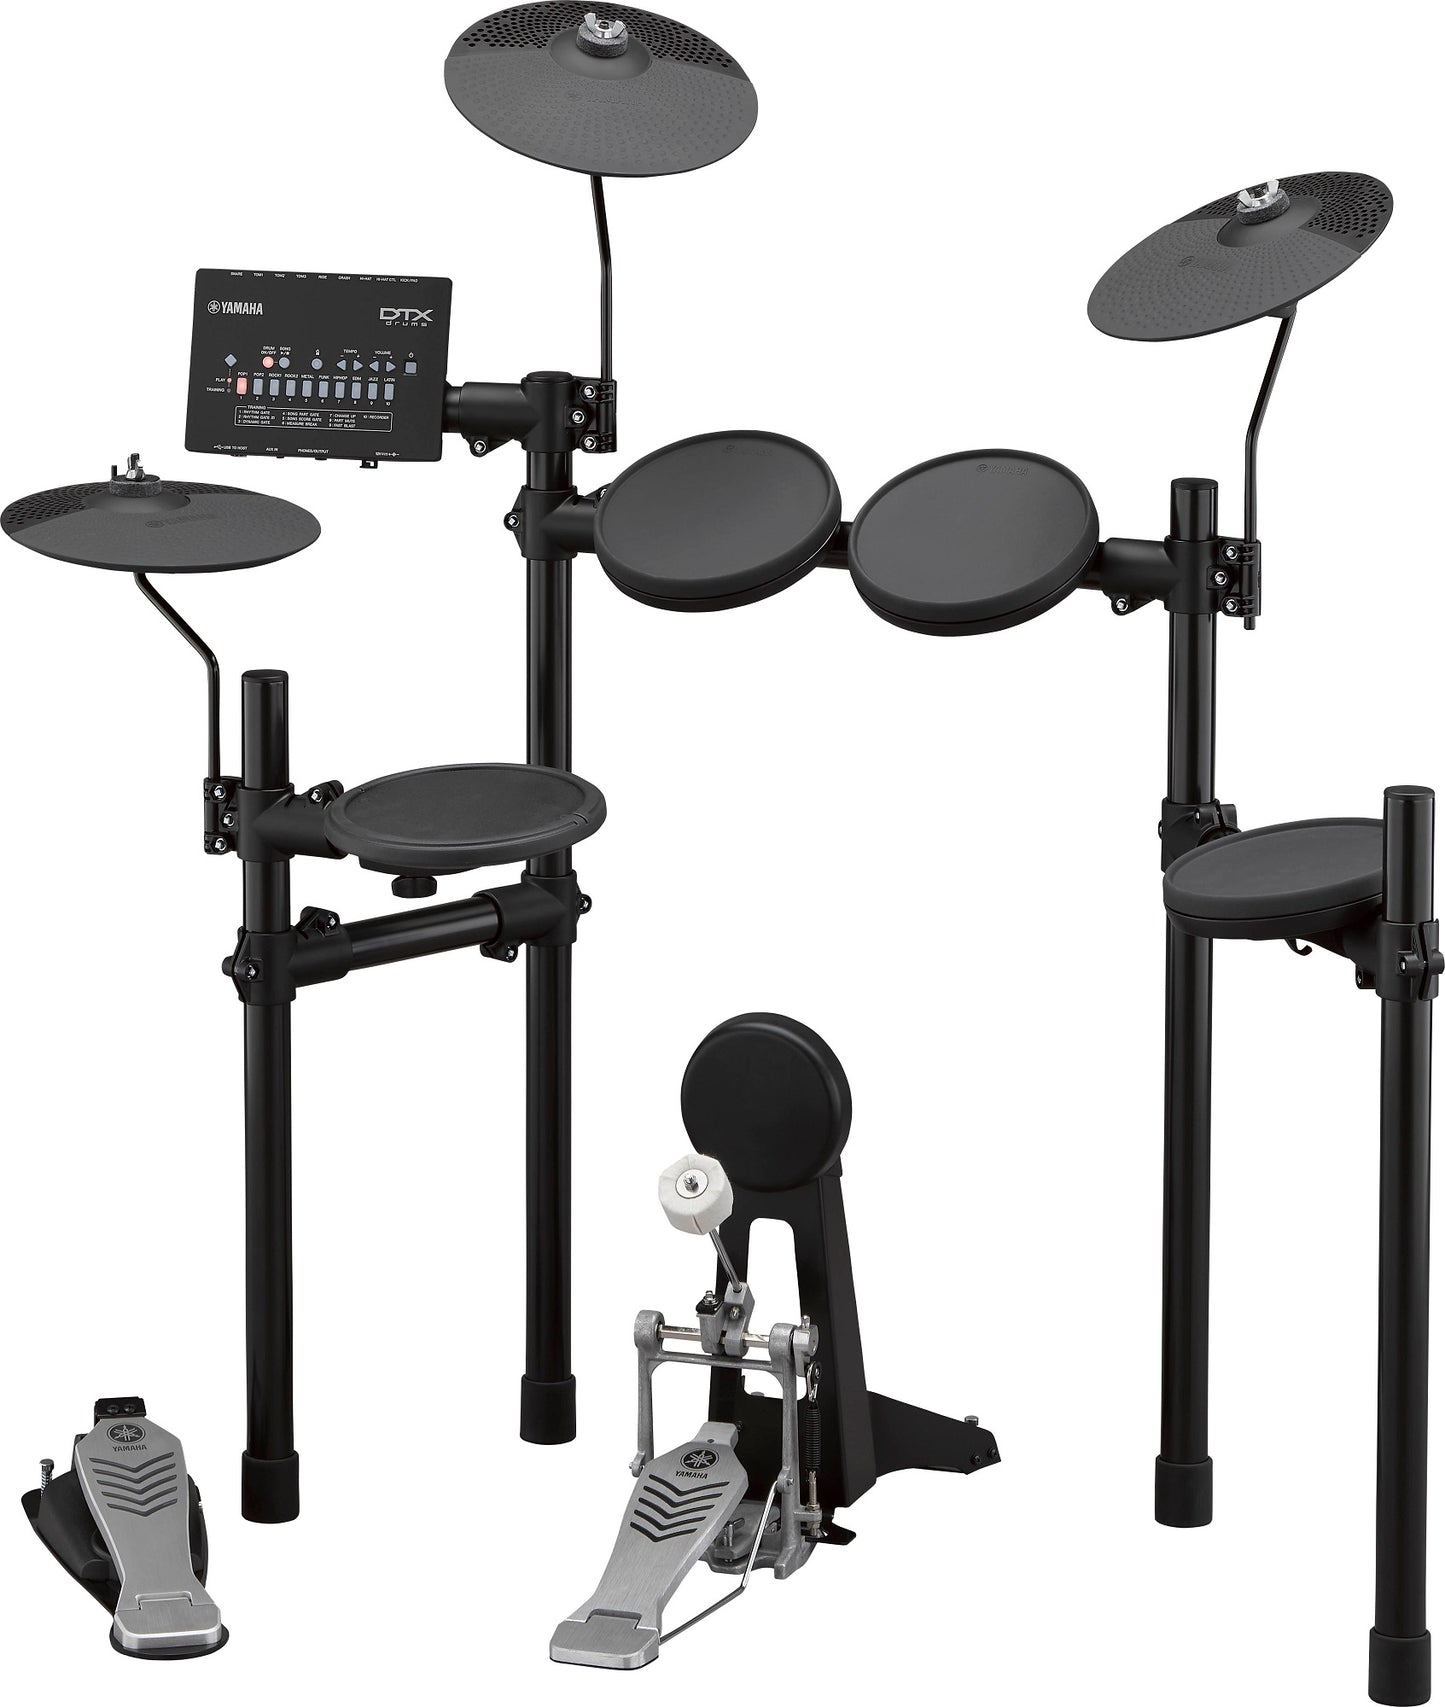 Yamaha DTX452K 5-Piece Electronic Drum Set | Reco Music Malaysia